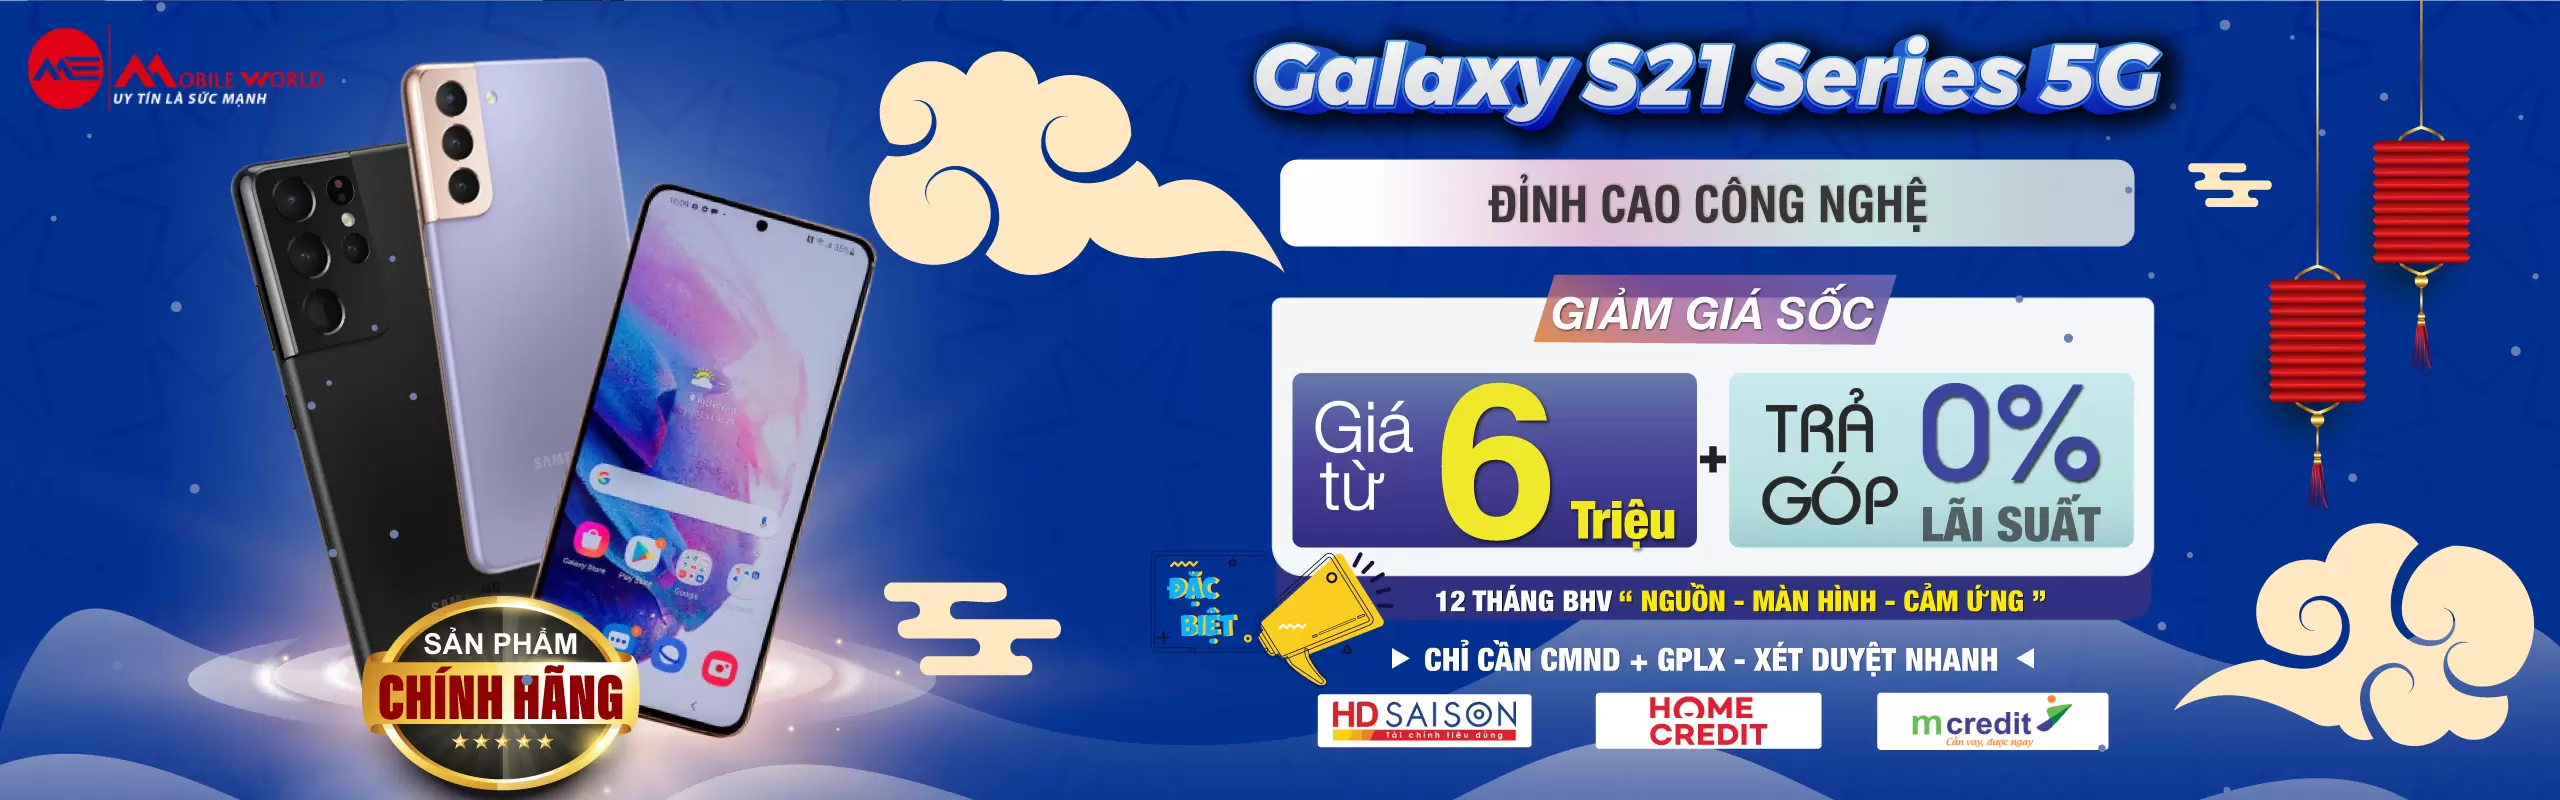 Galaxy S21 Series Giảm Giá Sốc Nhất